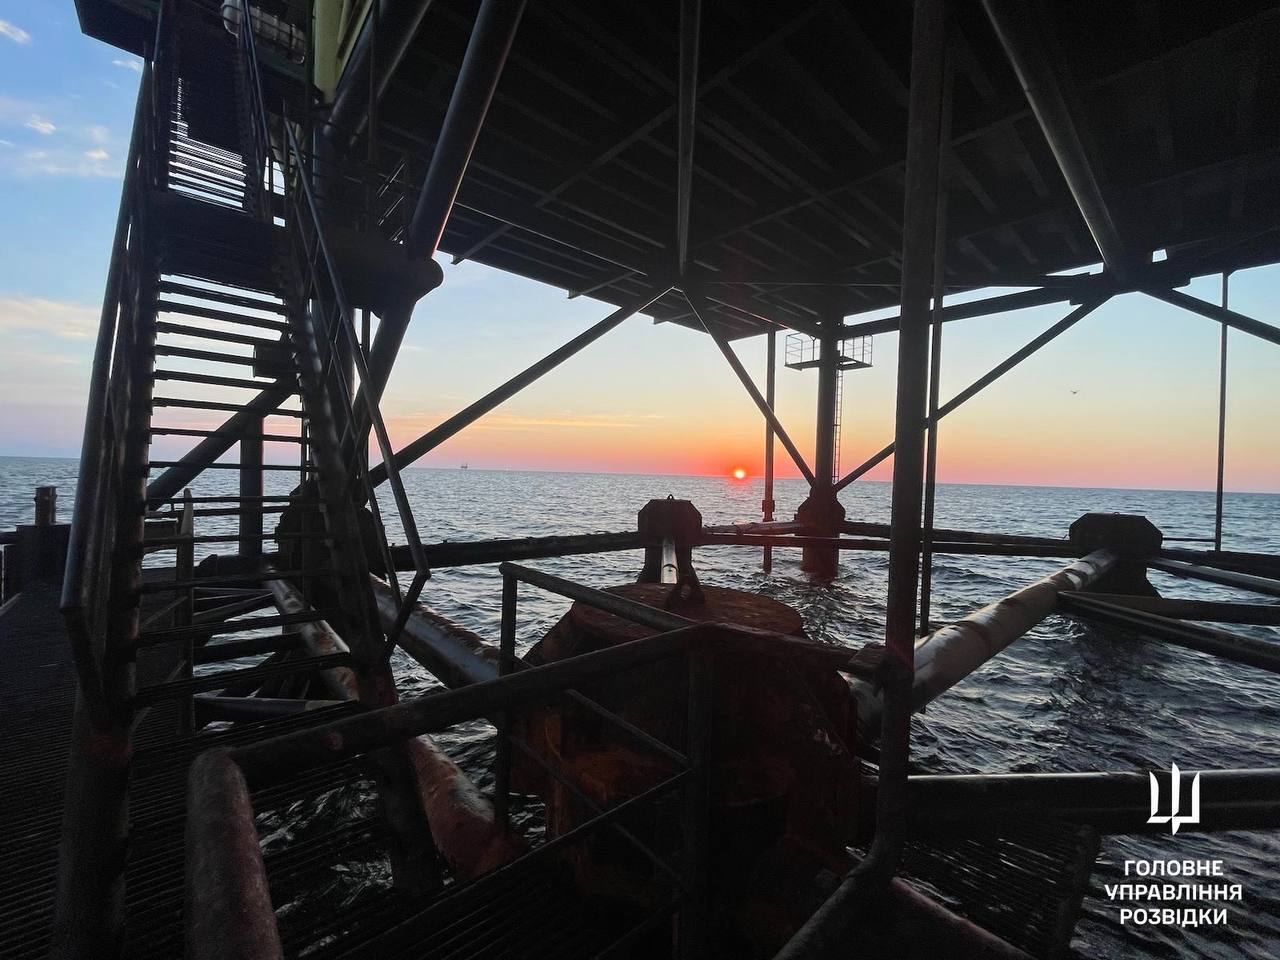 Документальные фото по спецоперации на газодобывающих платформах в Черном море